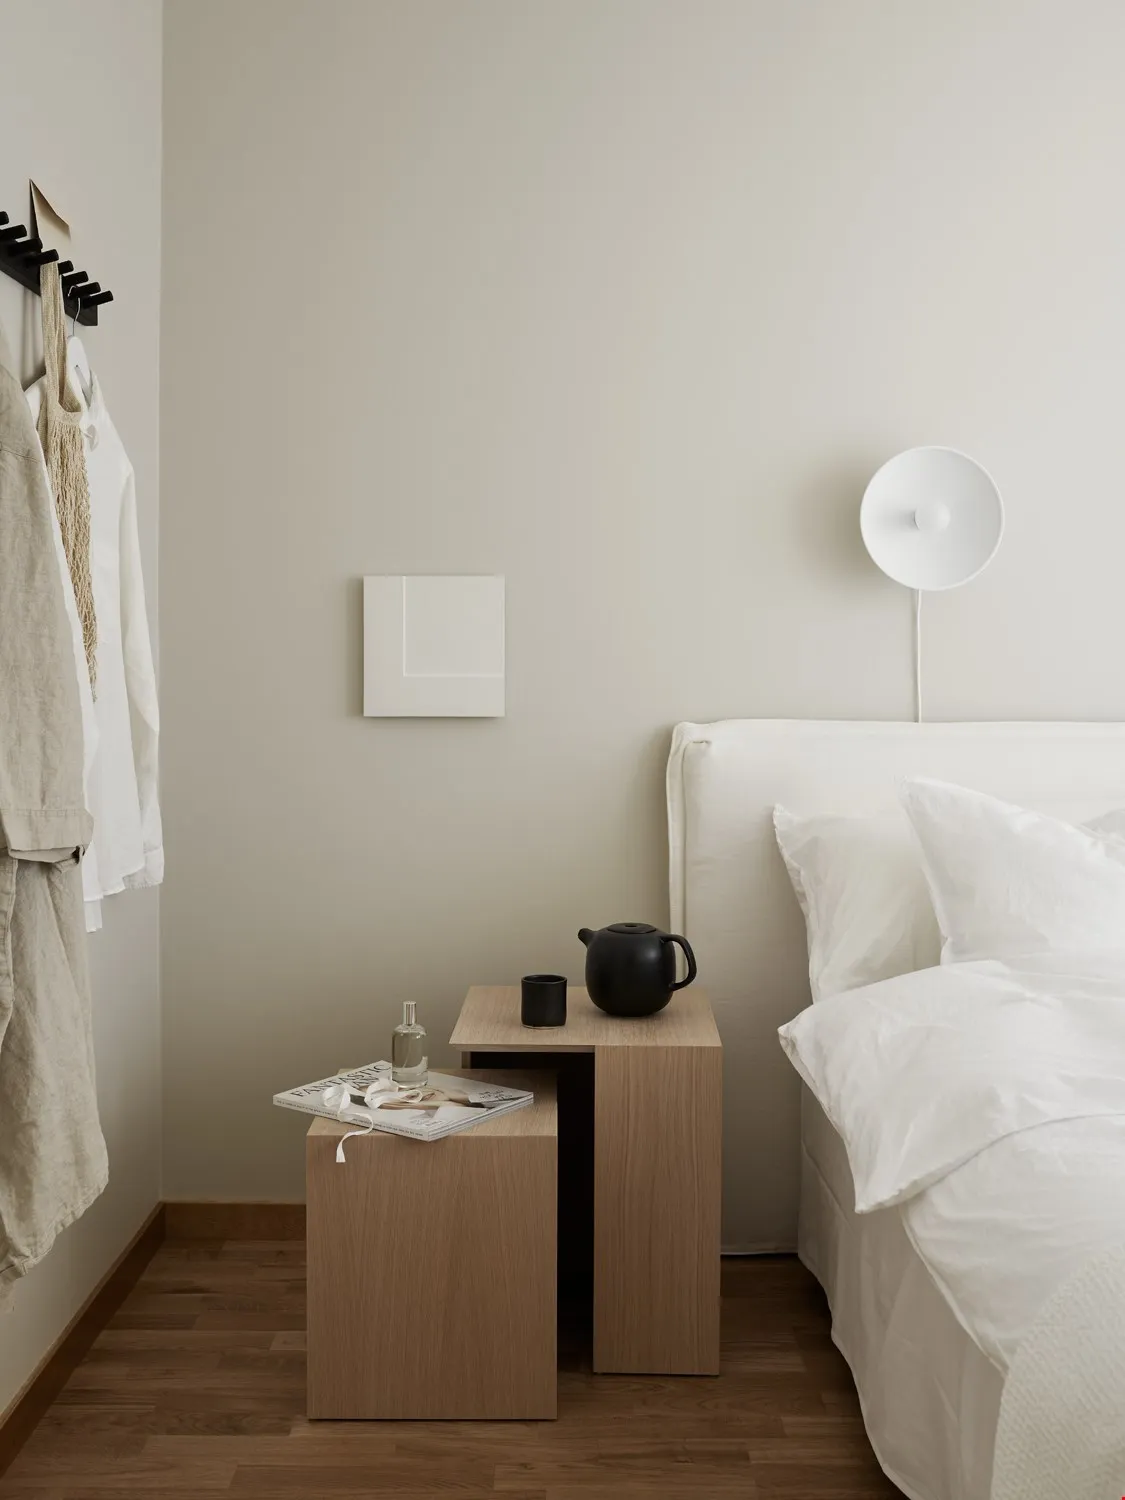 Стильная трансформирующаяся мебель для маленькой комнаты в скандинавском стиле: фото